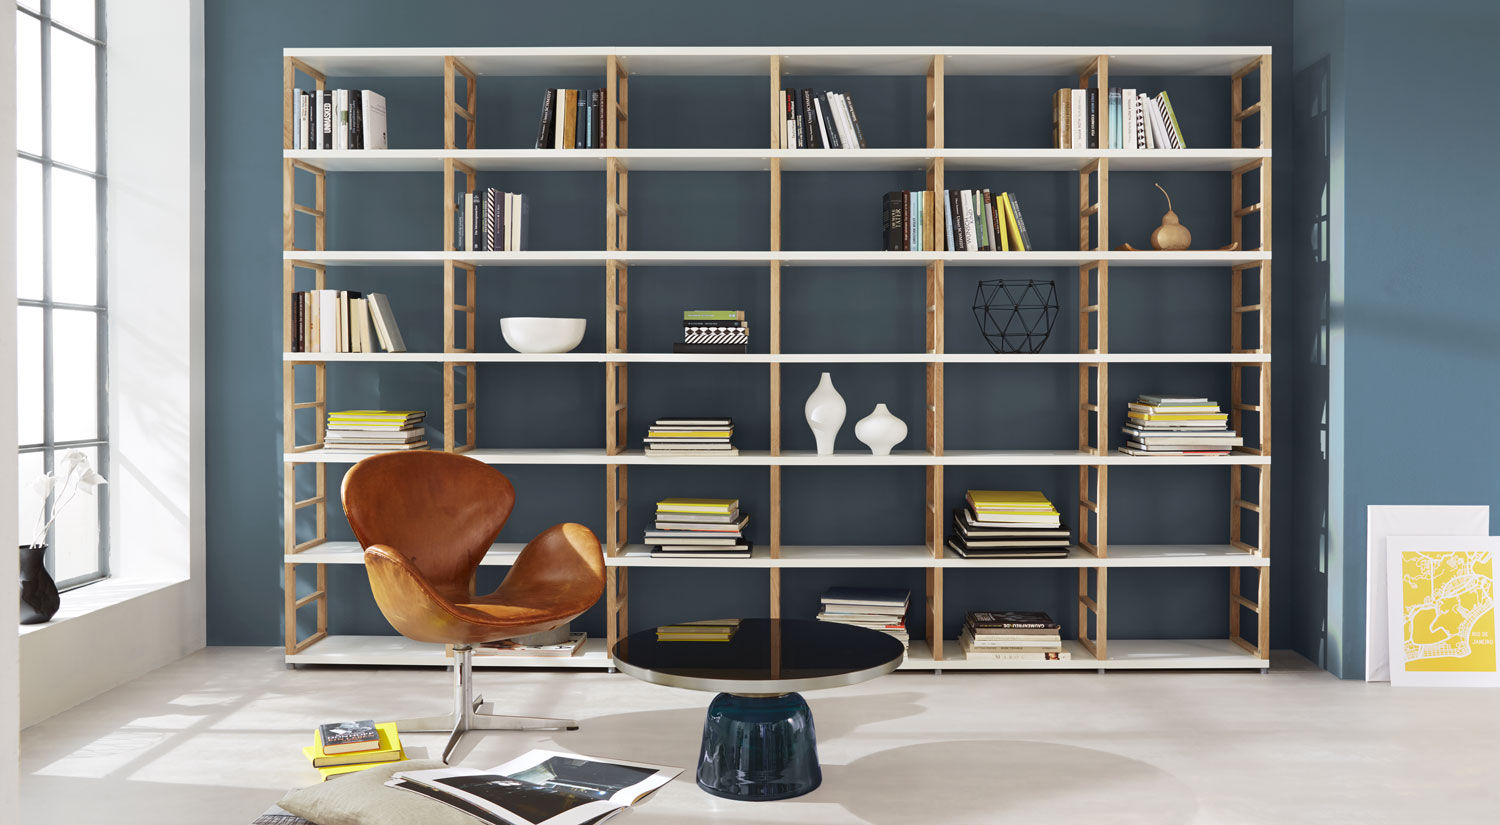 MAXX—Open Shelving Units homify 北欧デザインの リビング bookshelf,bookcase